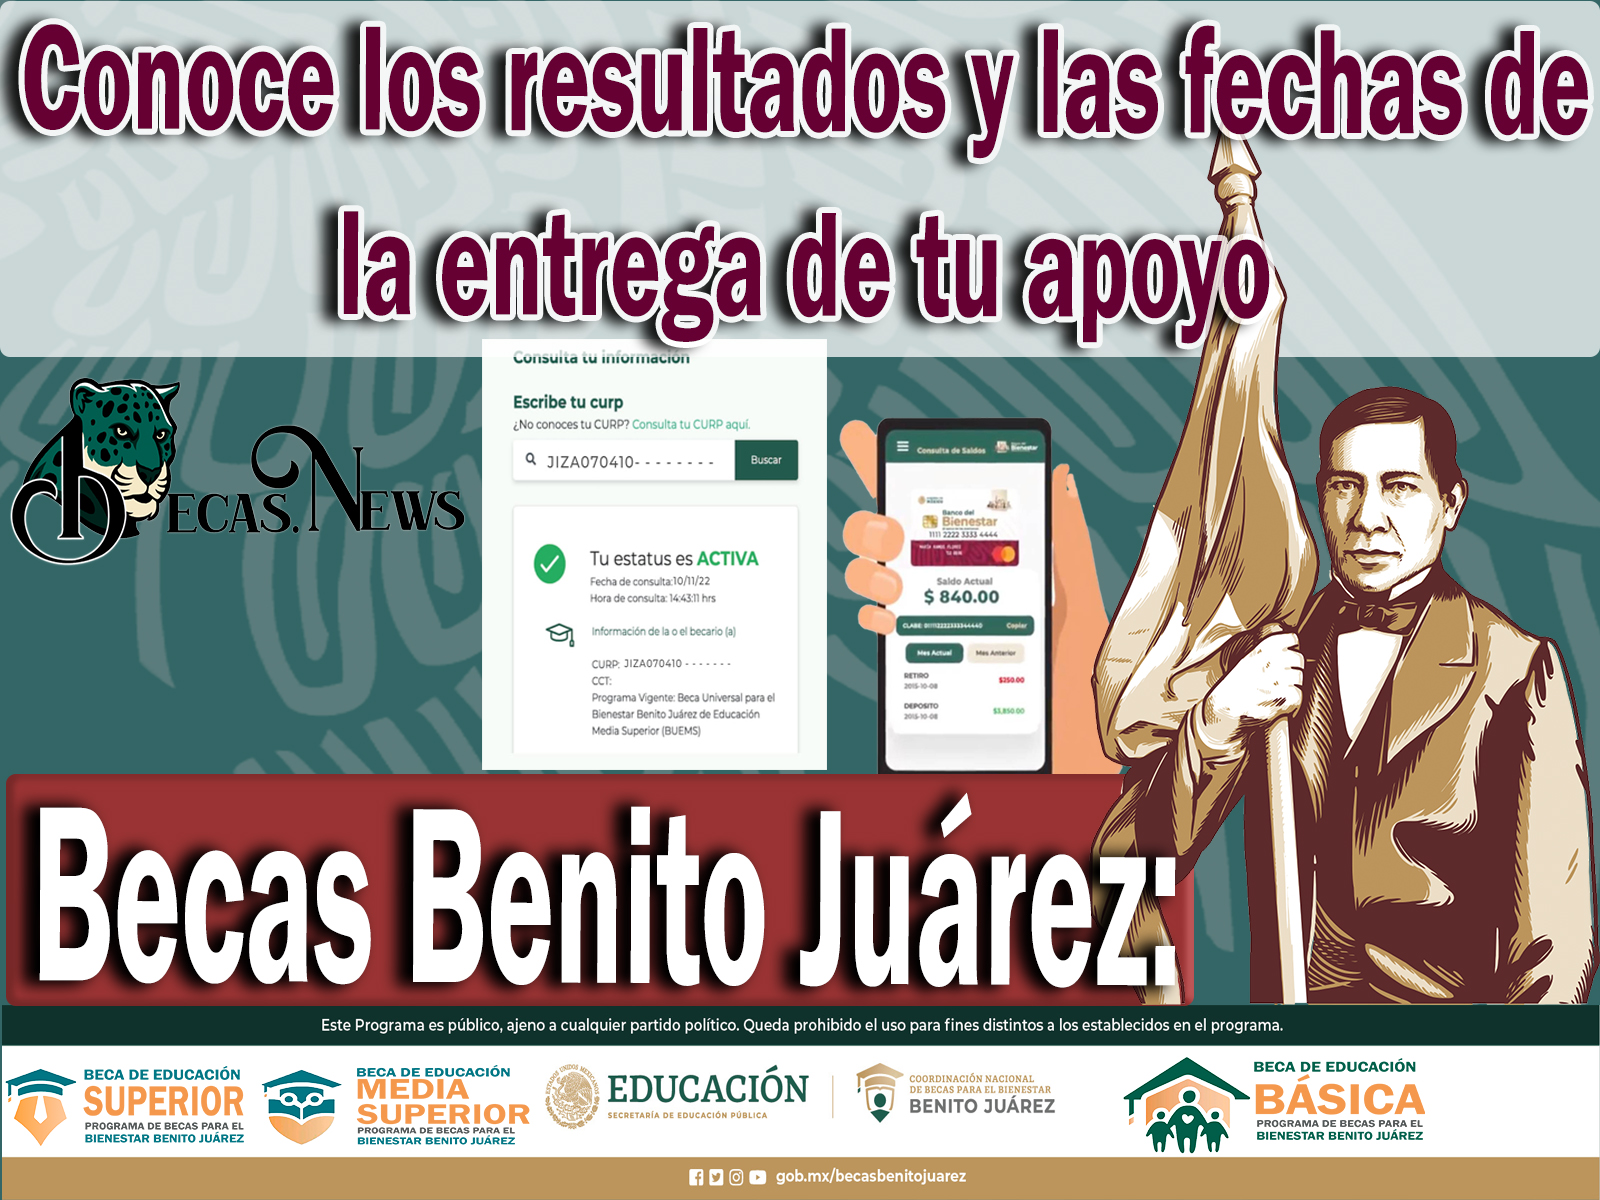 Becas Benito Juárez: Conoce los resultados y las fechas de la entrega de tu apoyo 